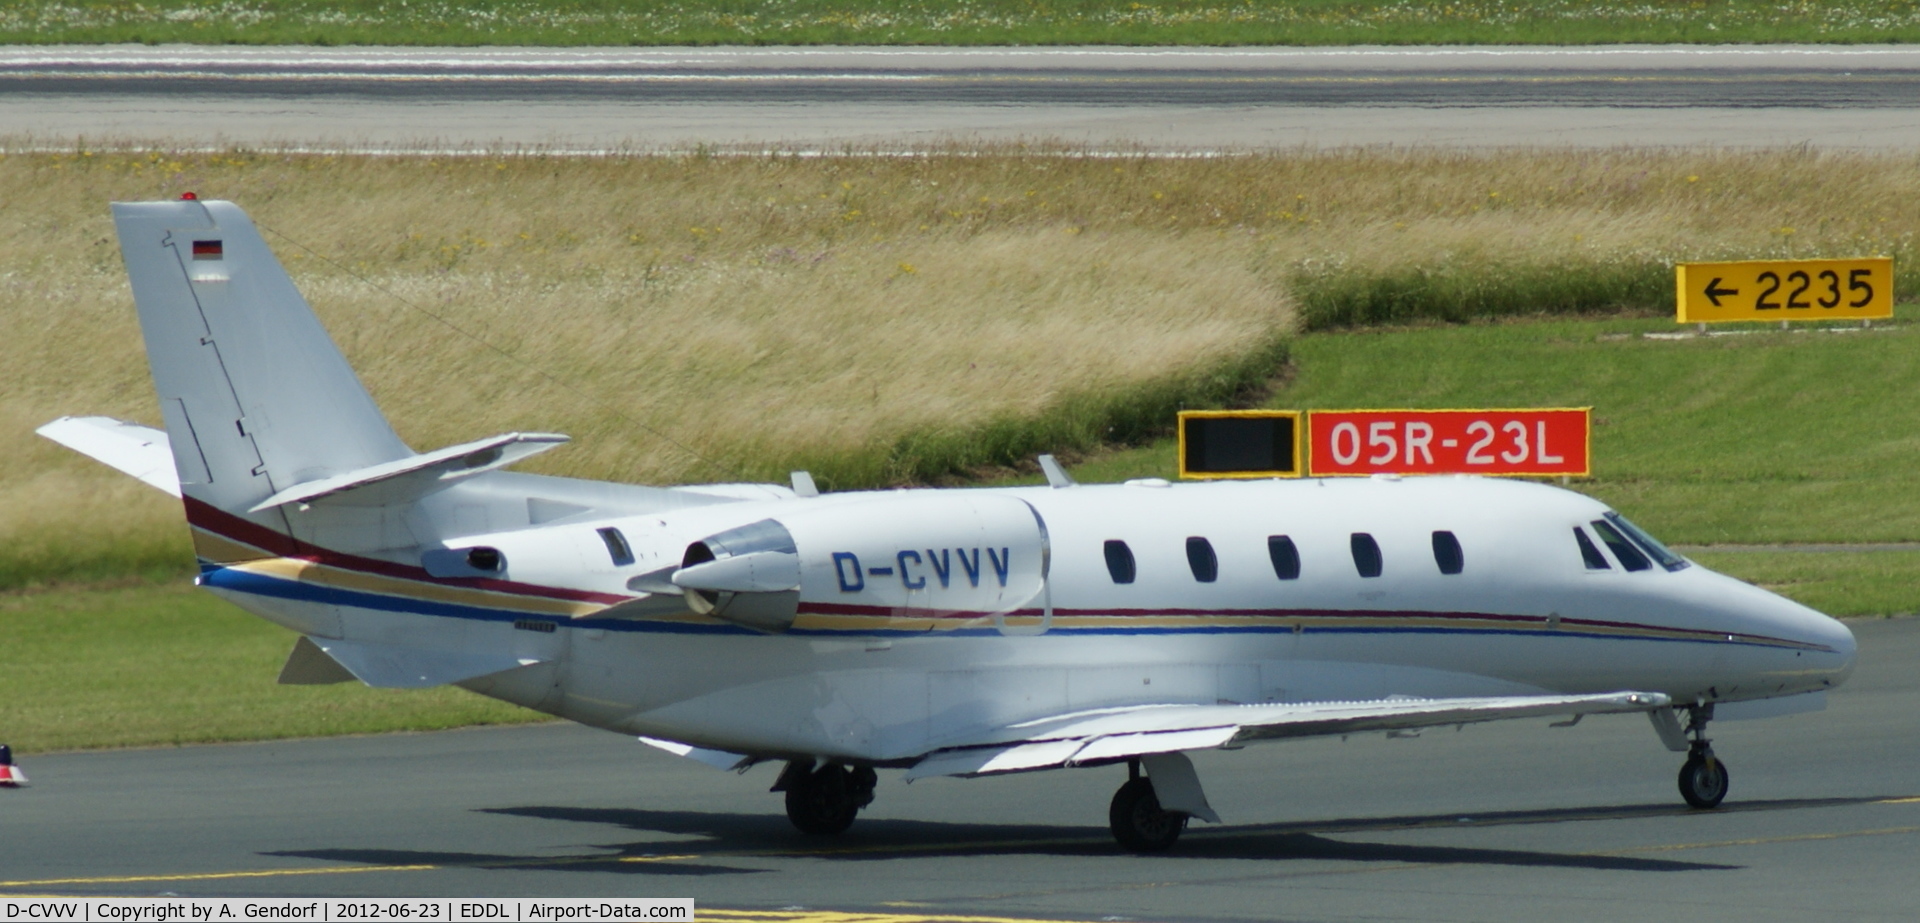 D-CVVV, 2007 Cessna 560 Citation XLS C/N 560-5723, Augusta Air (untitled), is seen here at Düsseldorf Int´l (EDDL)